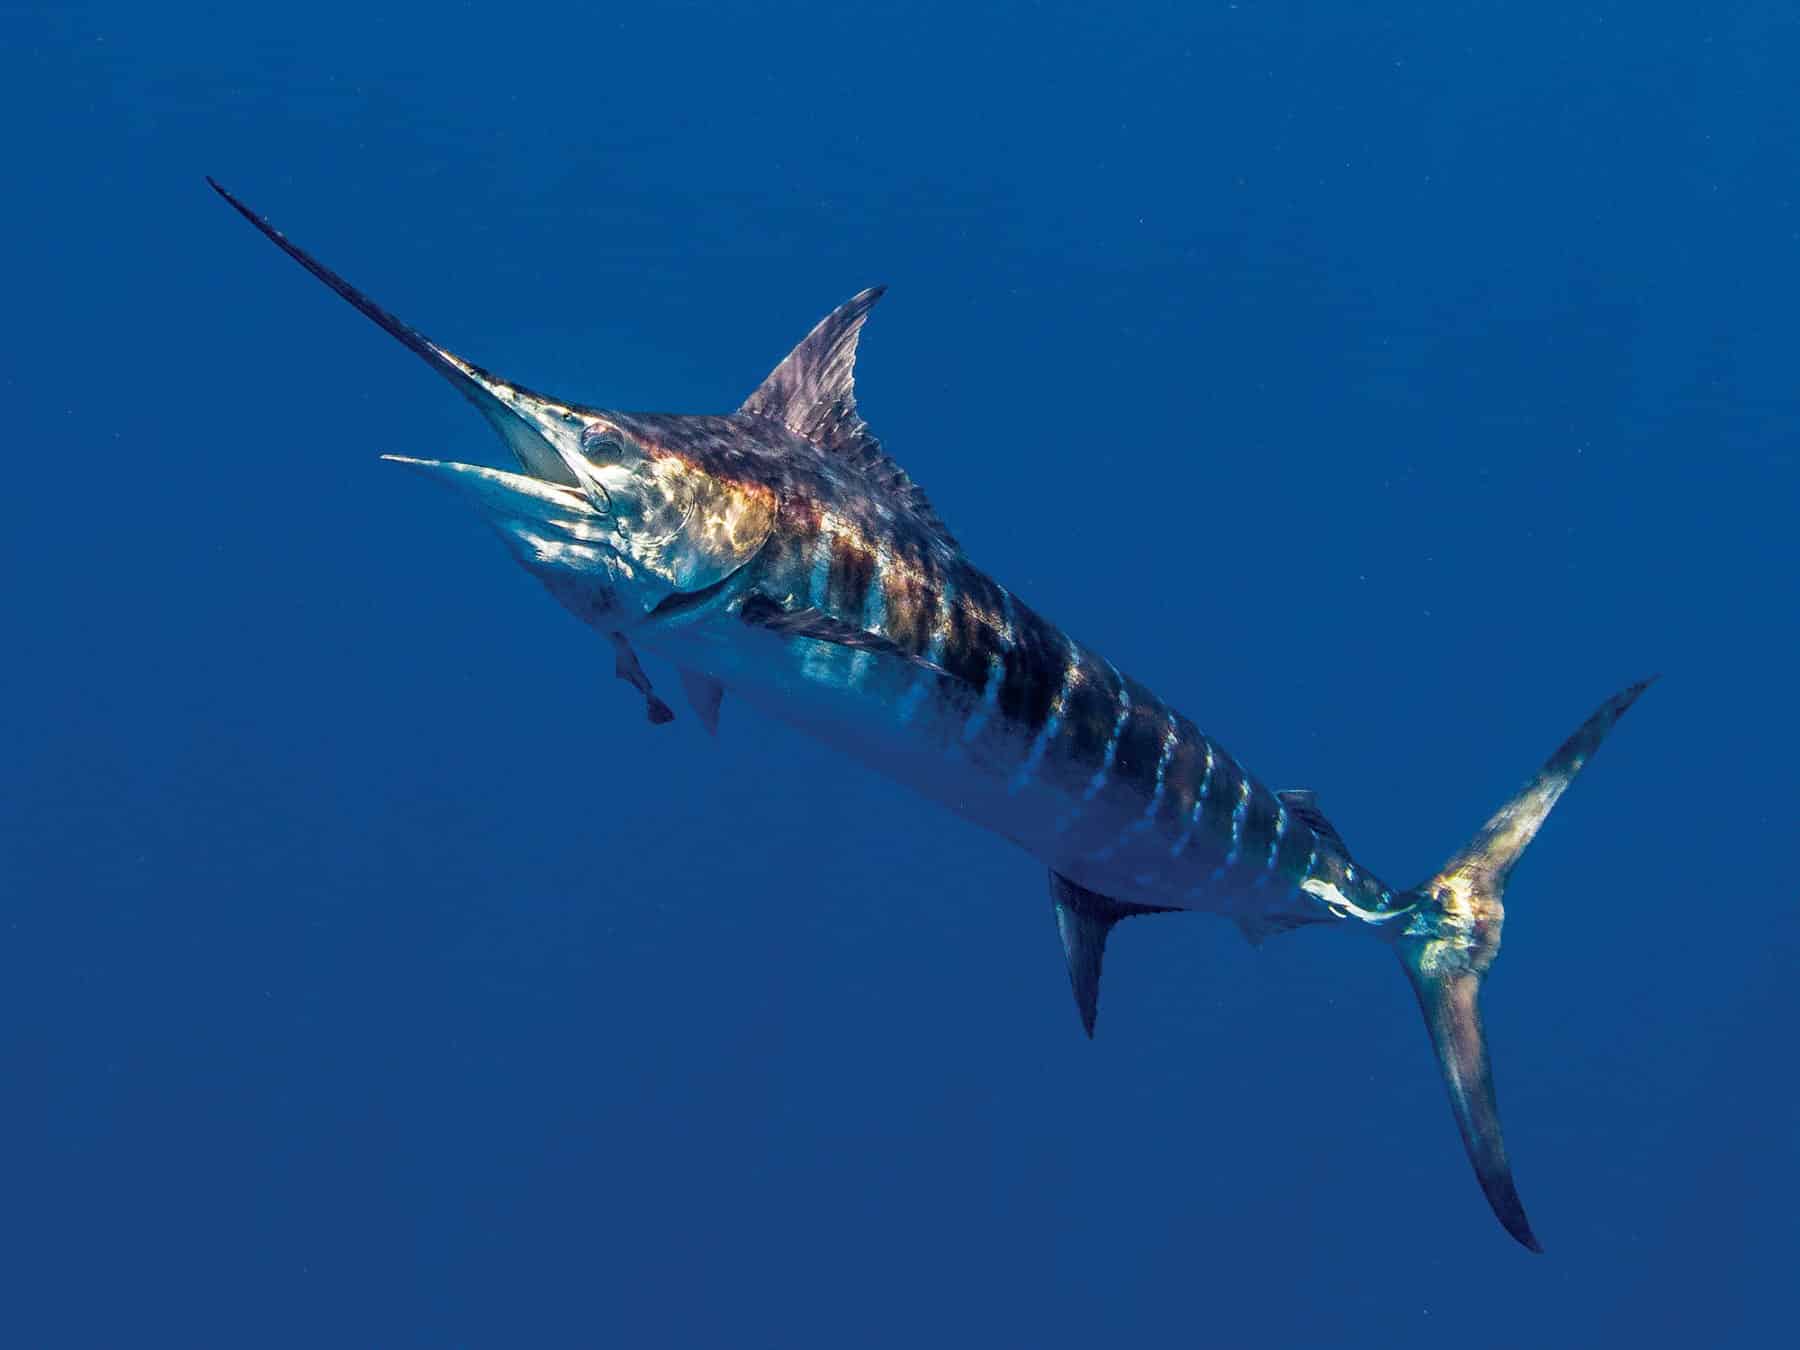 https://www.crfishingcharters.com/wp-content/uploads/2022/05/costa-rica-fishing-charters-sailfish-marlin-sportfishing.jpg